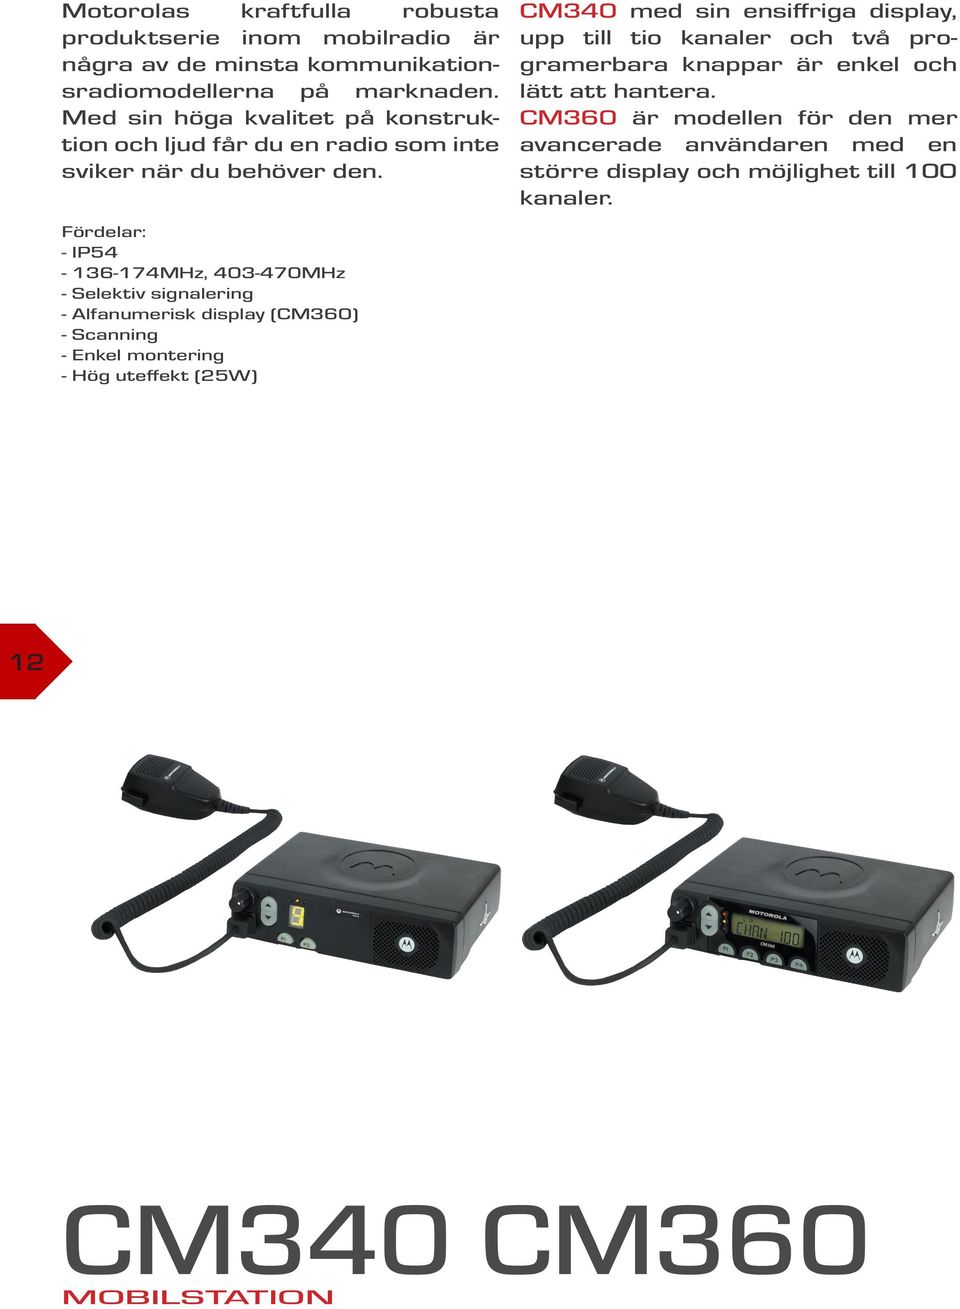 Fördelar: - IP54-136-174MHz, 403-470MHz - Selektiv signalering - Alfanumerisk display (CM360) - Scanning - Enkel montering - Hög uteffekt (25W) CM340 med